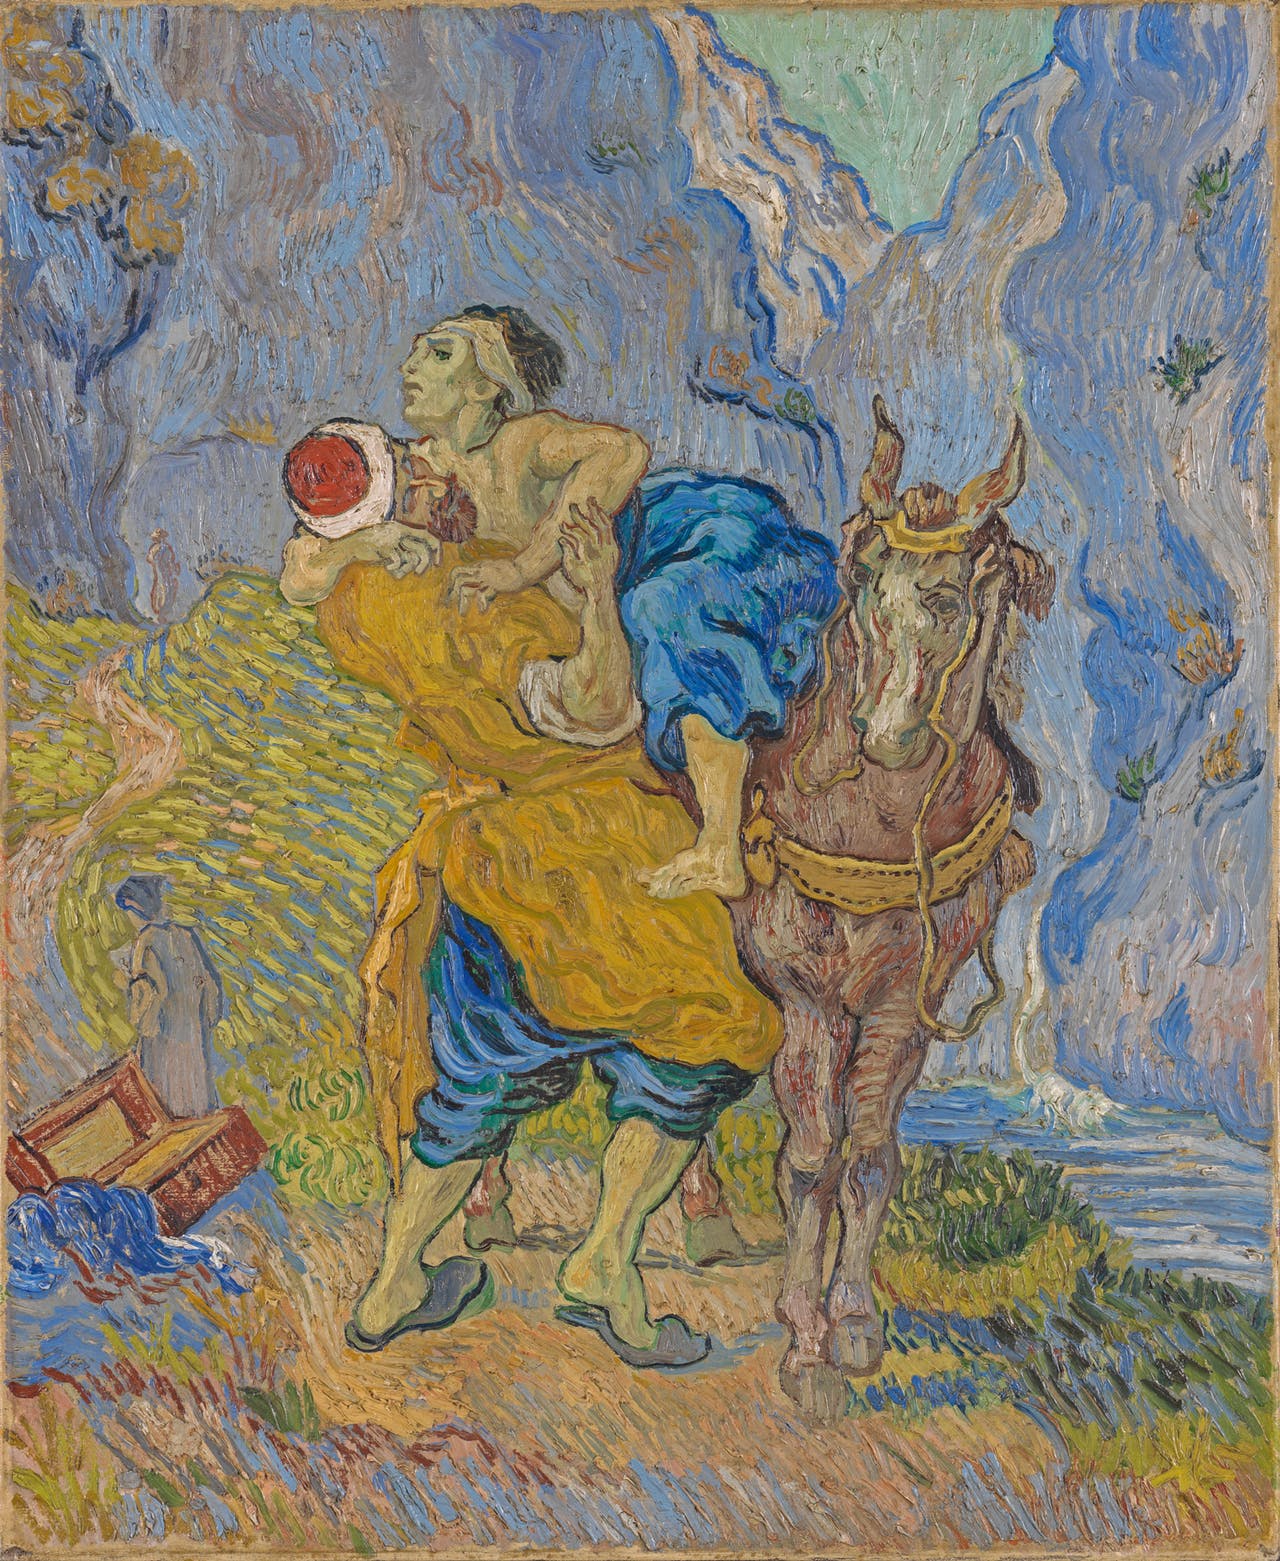 O Bom Samaritano by Vincent van Gogh - Early May 1890 - 73 × 59.5 cm 